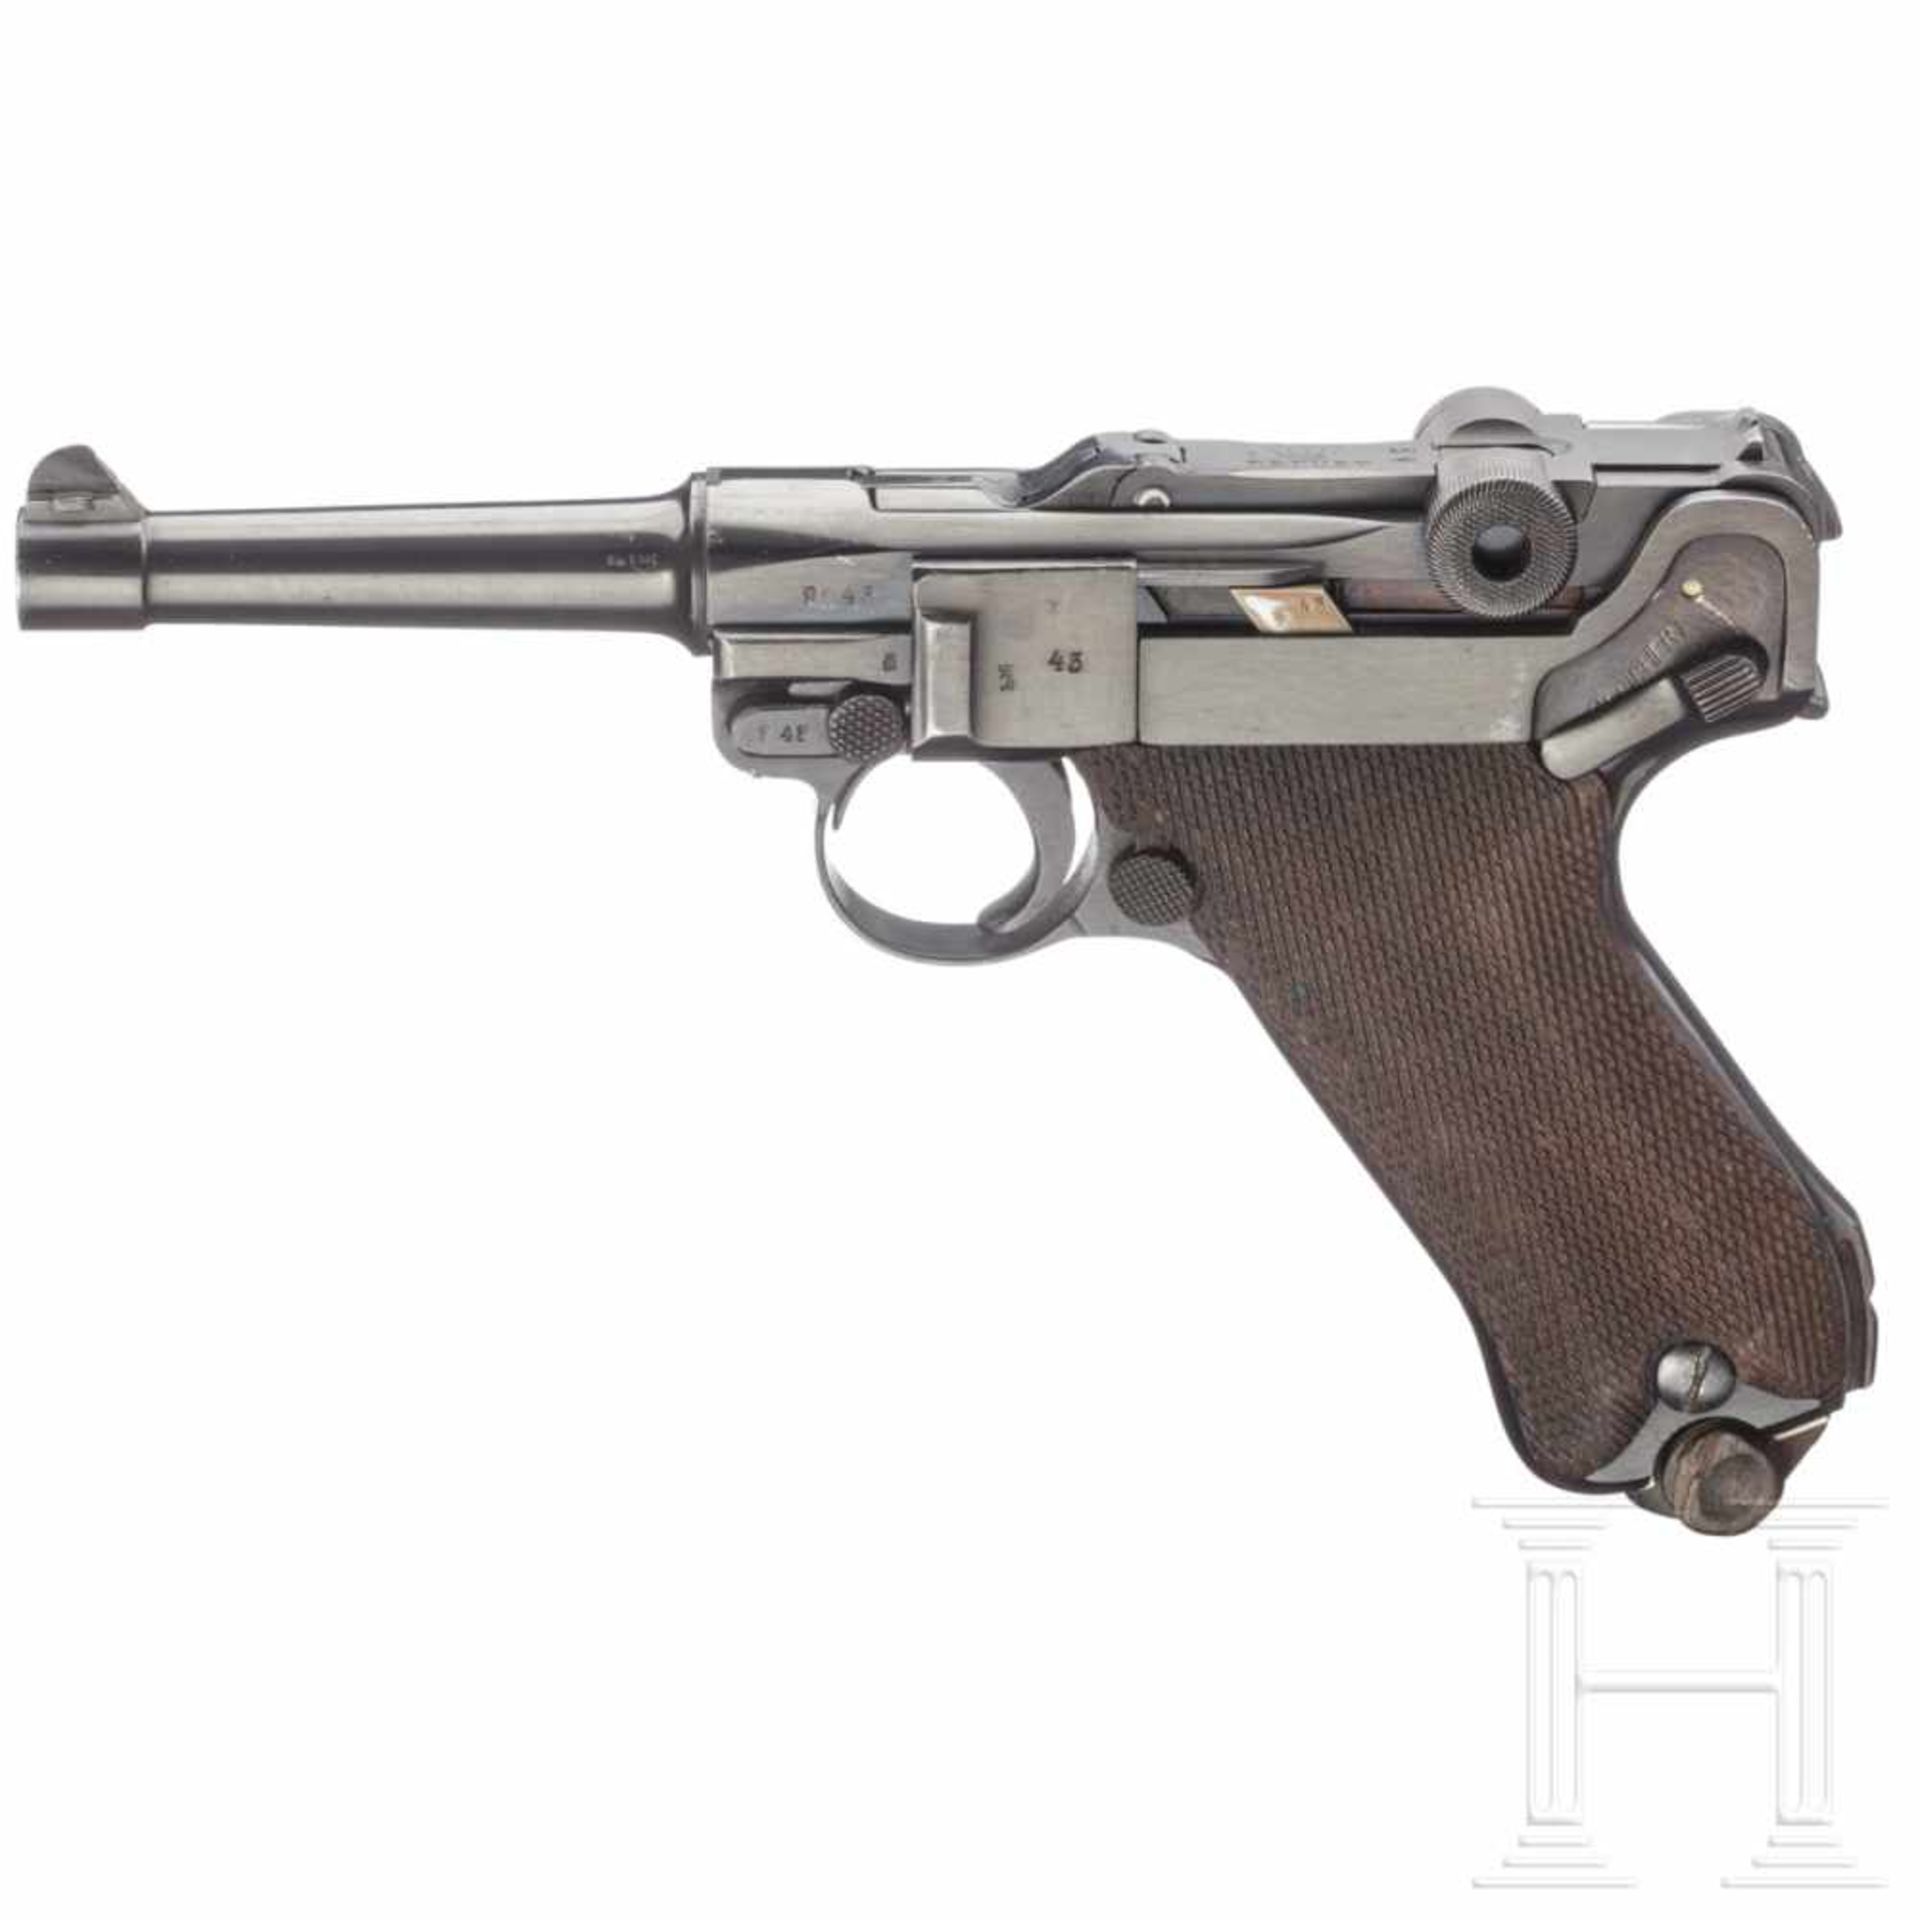 Pistole 08, ErfurtKal. 9mm Luger, Nr. 9943, Nummerngleich, inkl. Schlagbolzen und Griffschalen.